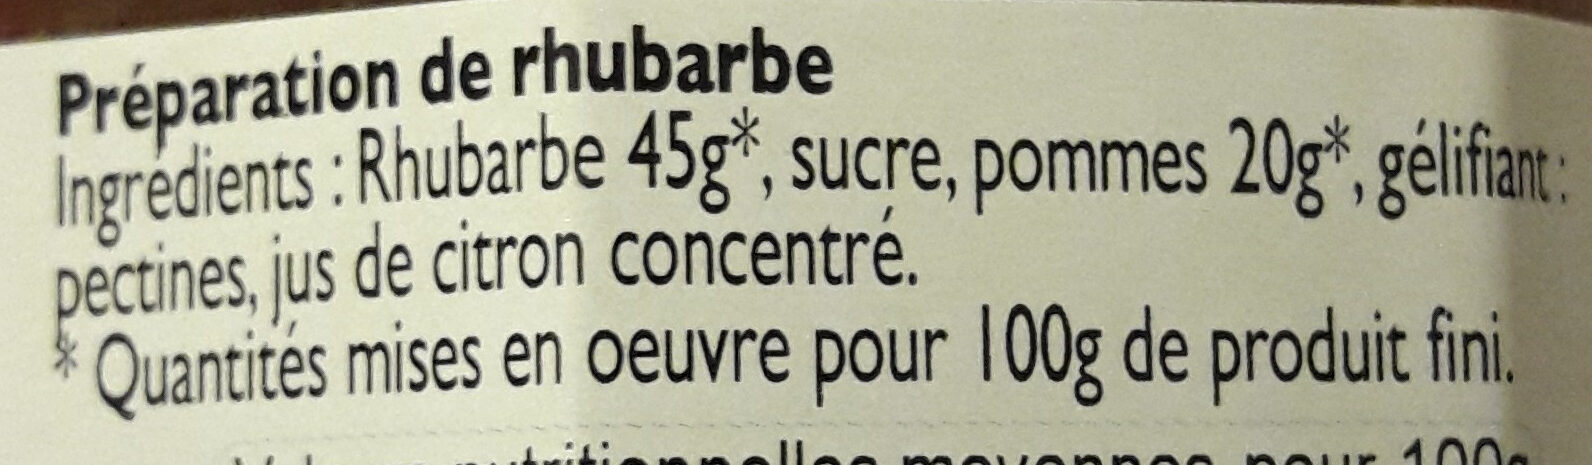 Confiture rhubarbe Lucien Georgelin - Ingredientes - fr